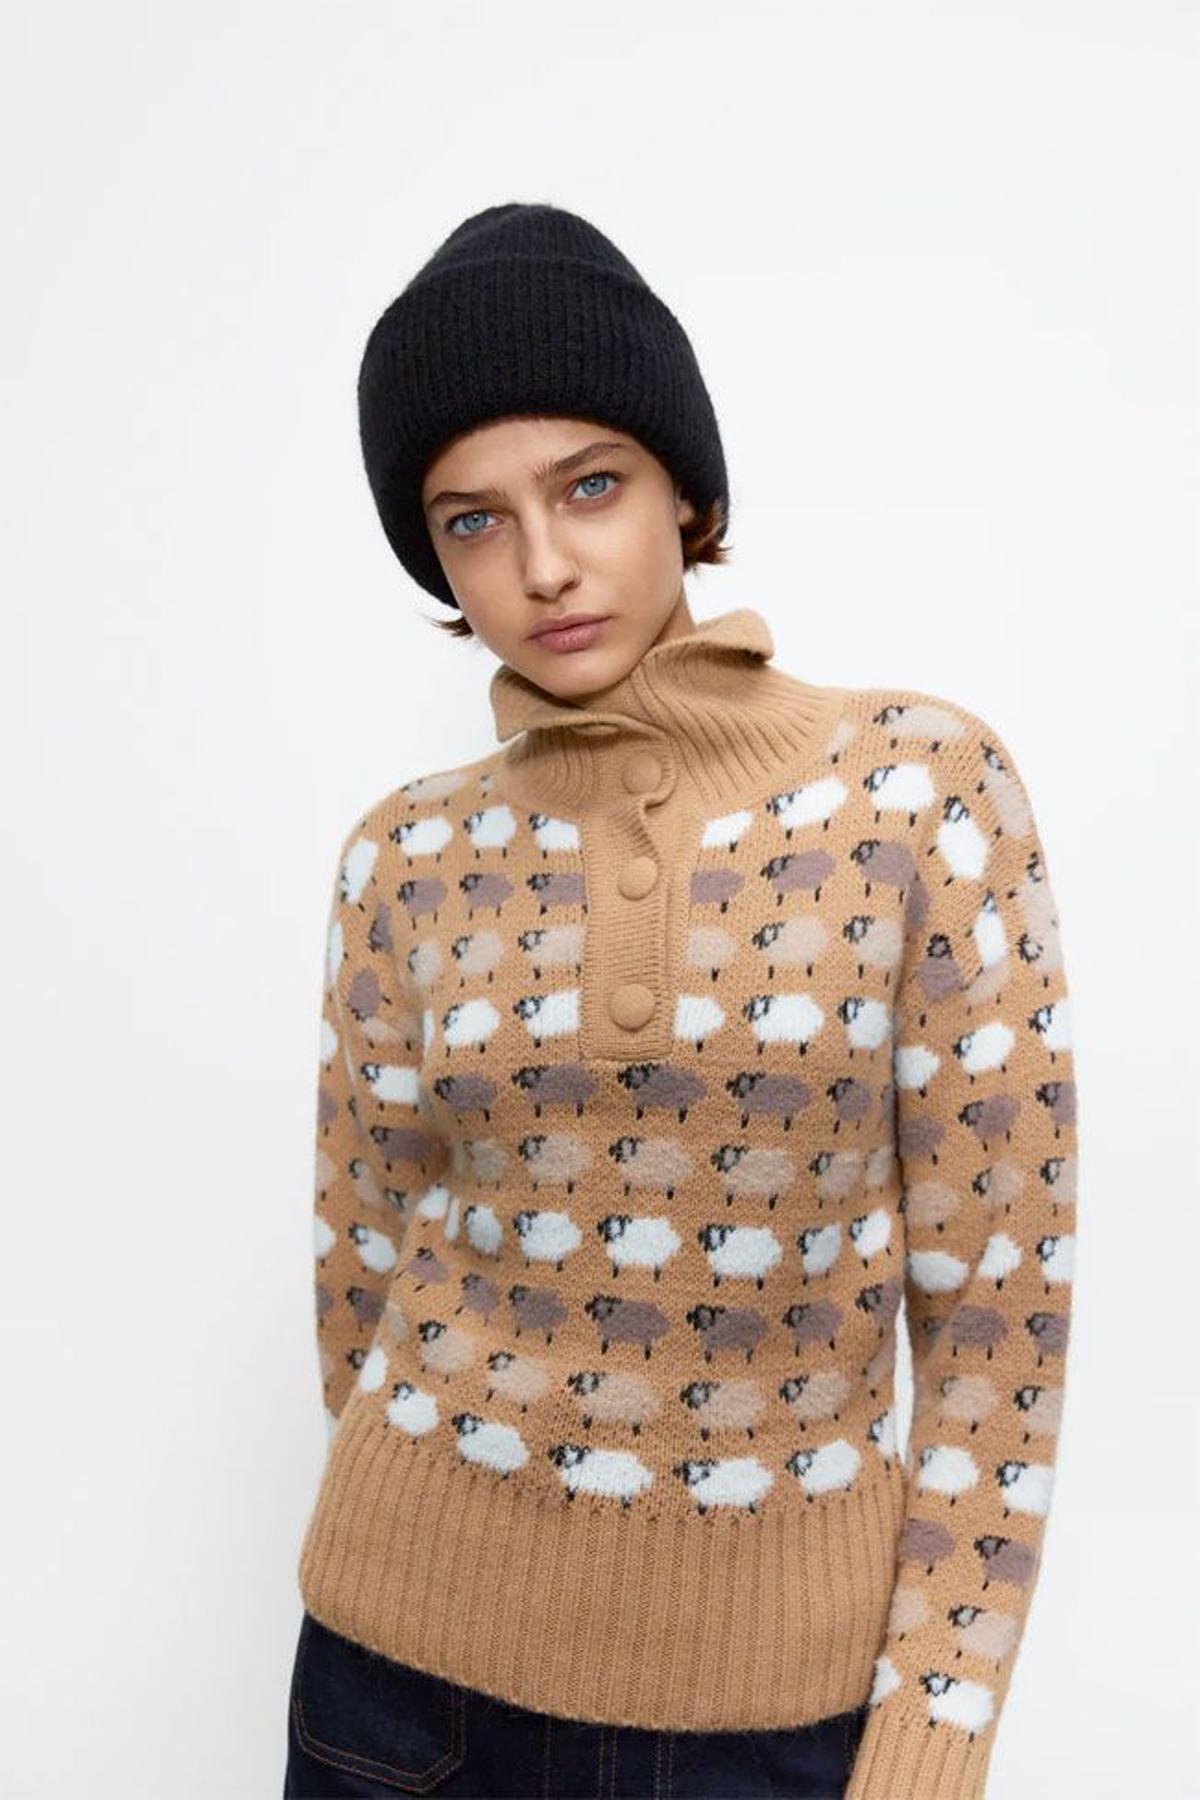 Jersey de cuello alto y botones con estampado de ovejas, de Zara